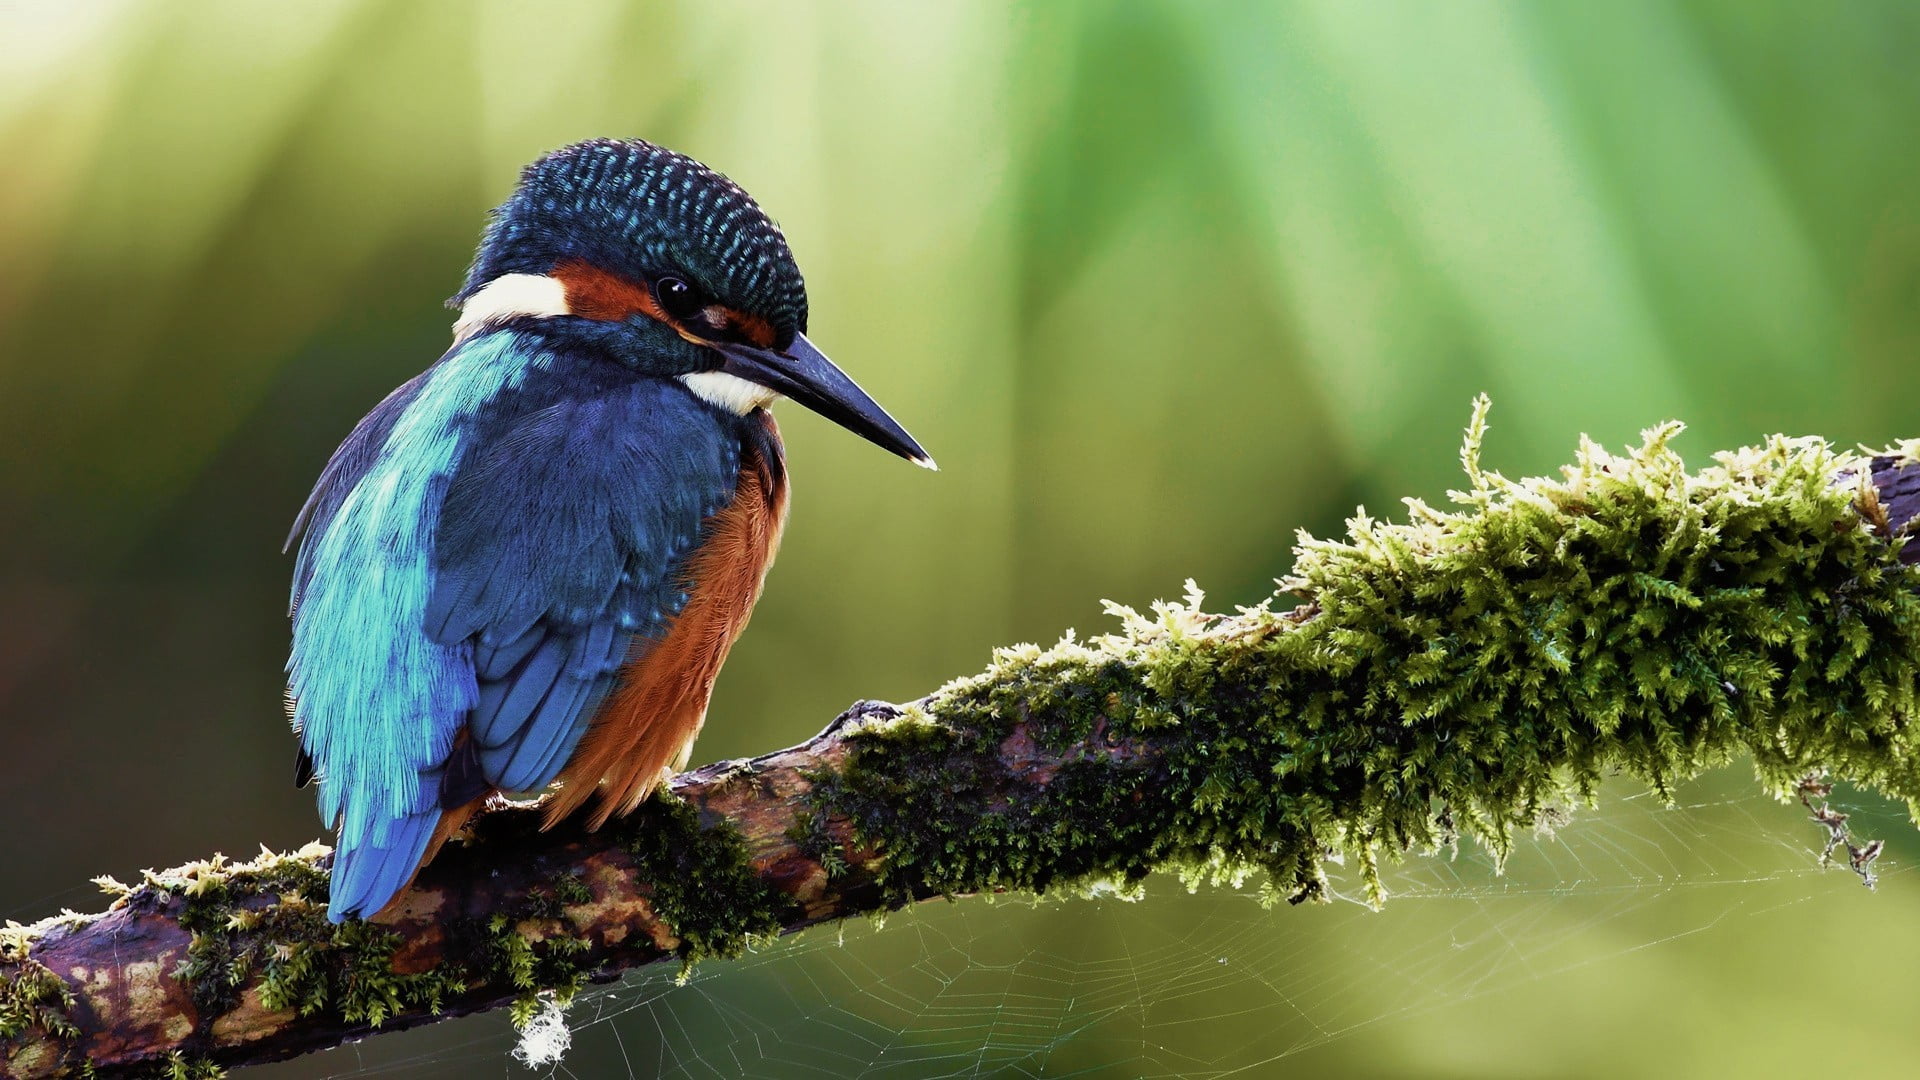 blue feather bird, birds, kingfisher, branch, animals